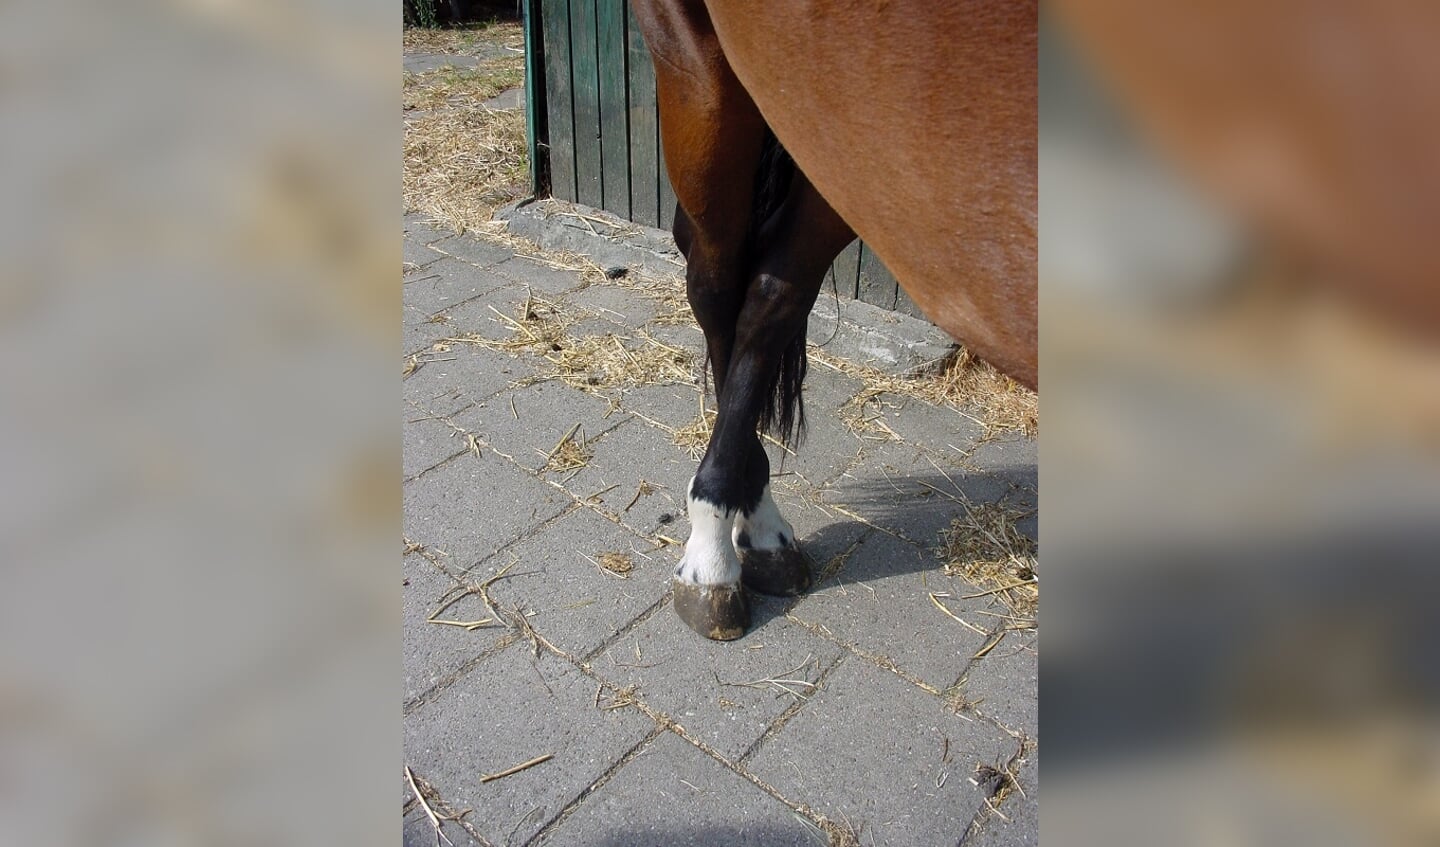 Foto: Remco VeurinkHet paard zet zijn voet niet automatisch terug. Dit gebrek aan reflex is een van de zaken die de dierenarts checkt bij het stellen van een diagnose